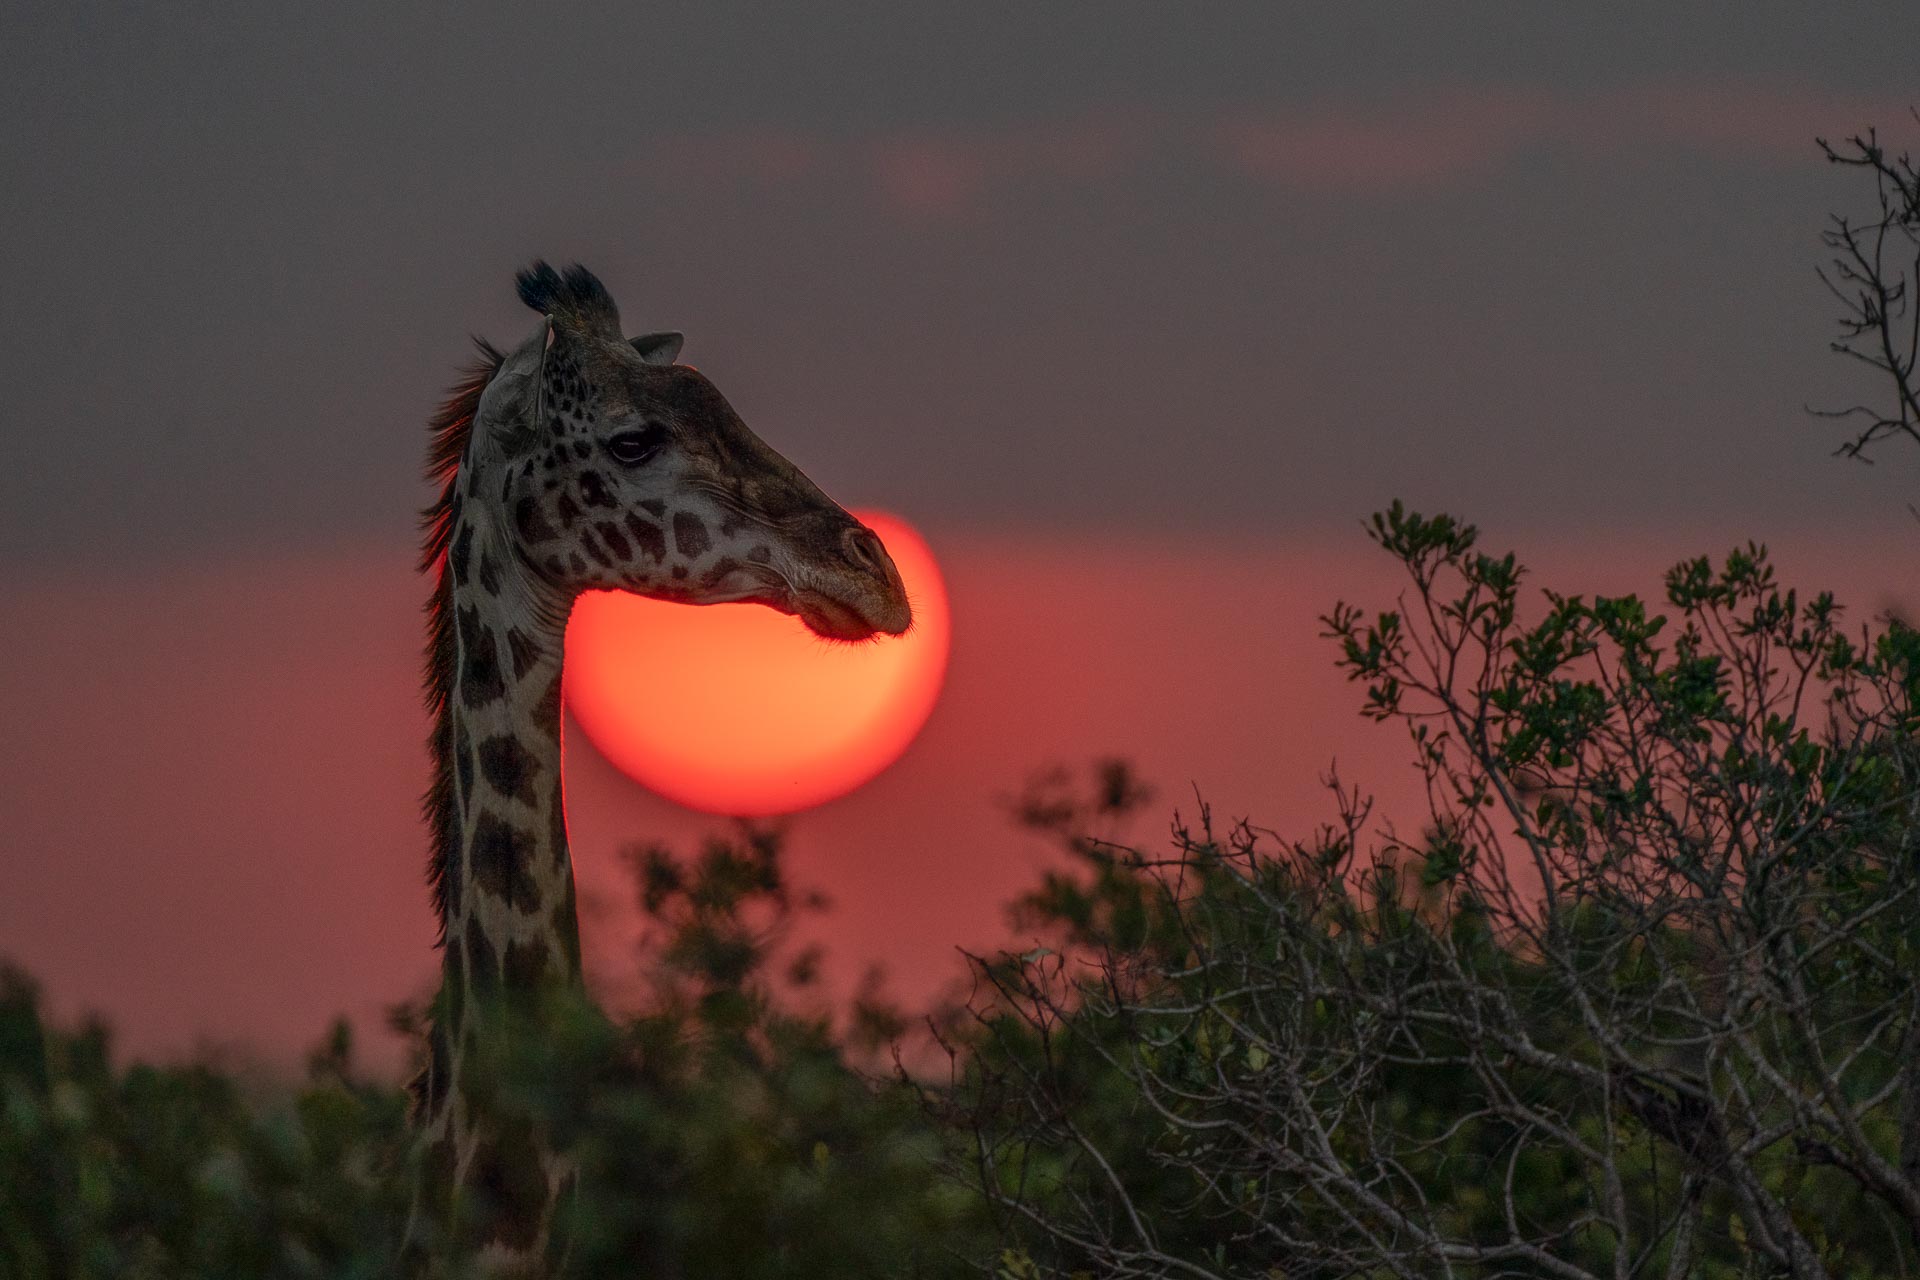 Giraffe at sunset...